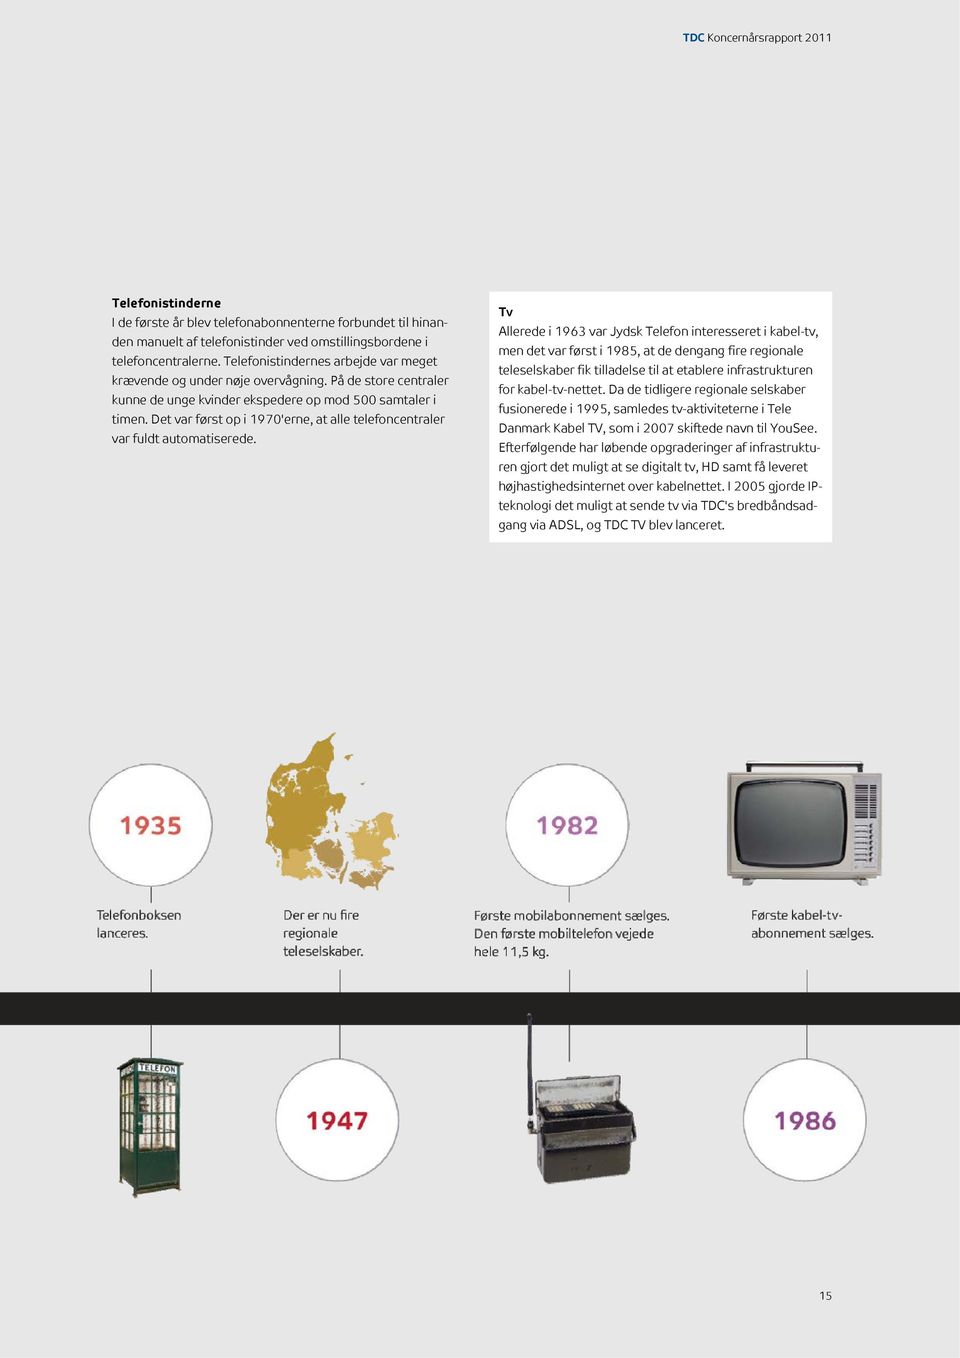 Det var først op i 1970'erne, at alle telefoncentraler var fuldt automatiserede.